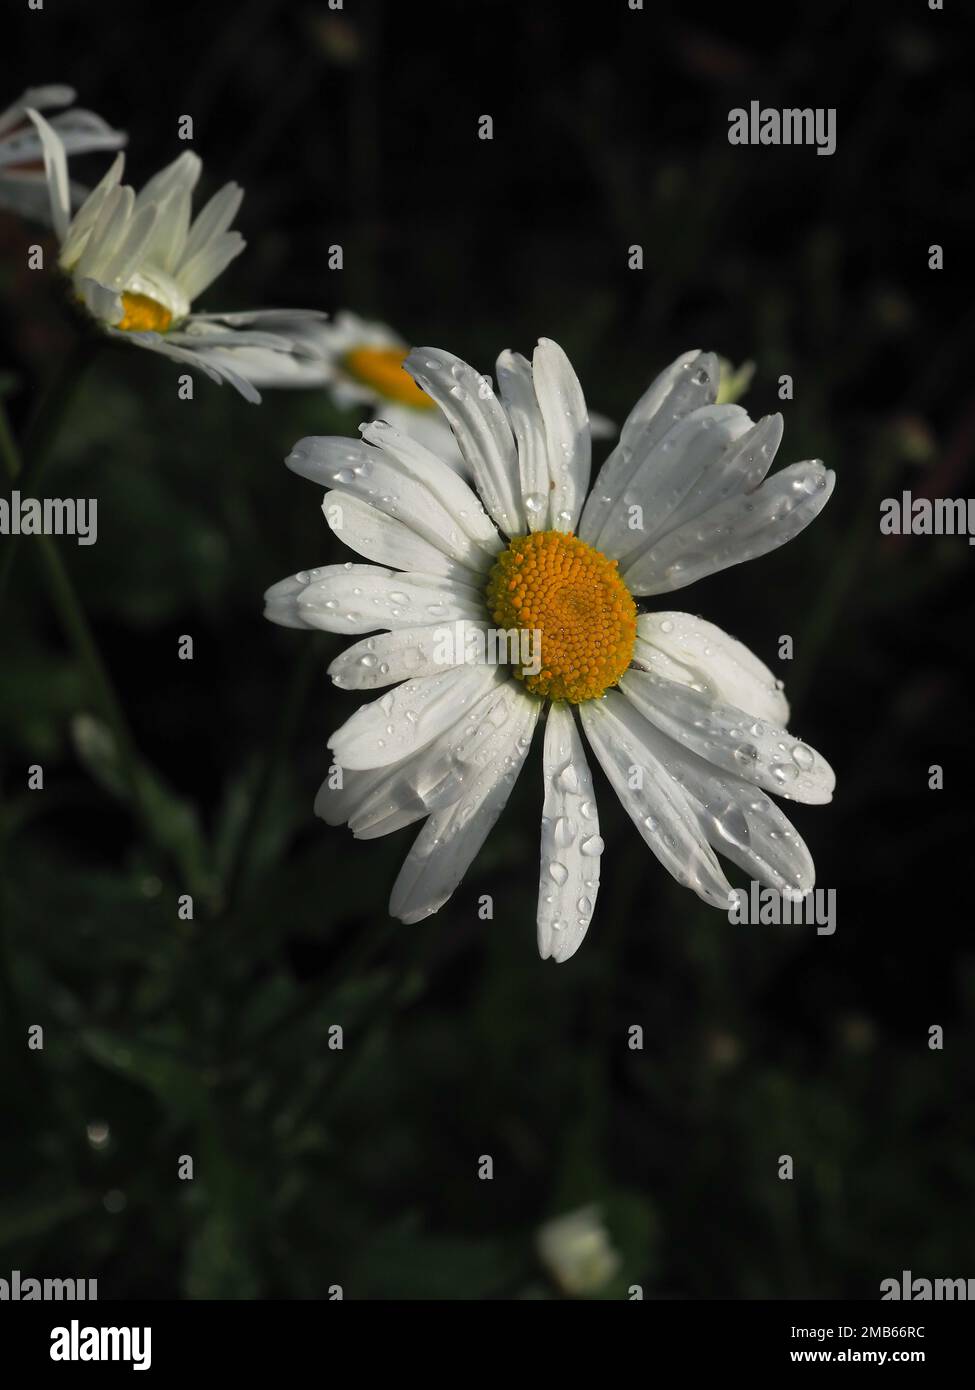 Nahaufnahme der Blume Leucanthemum x Superbum (Shasta Daisy) im Garten mit Regentropfen darauf, die hell vor einem dunklen Hintergrund leuchten Stockfoto